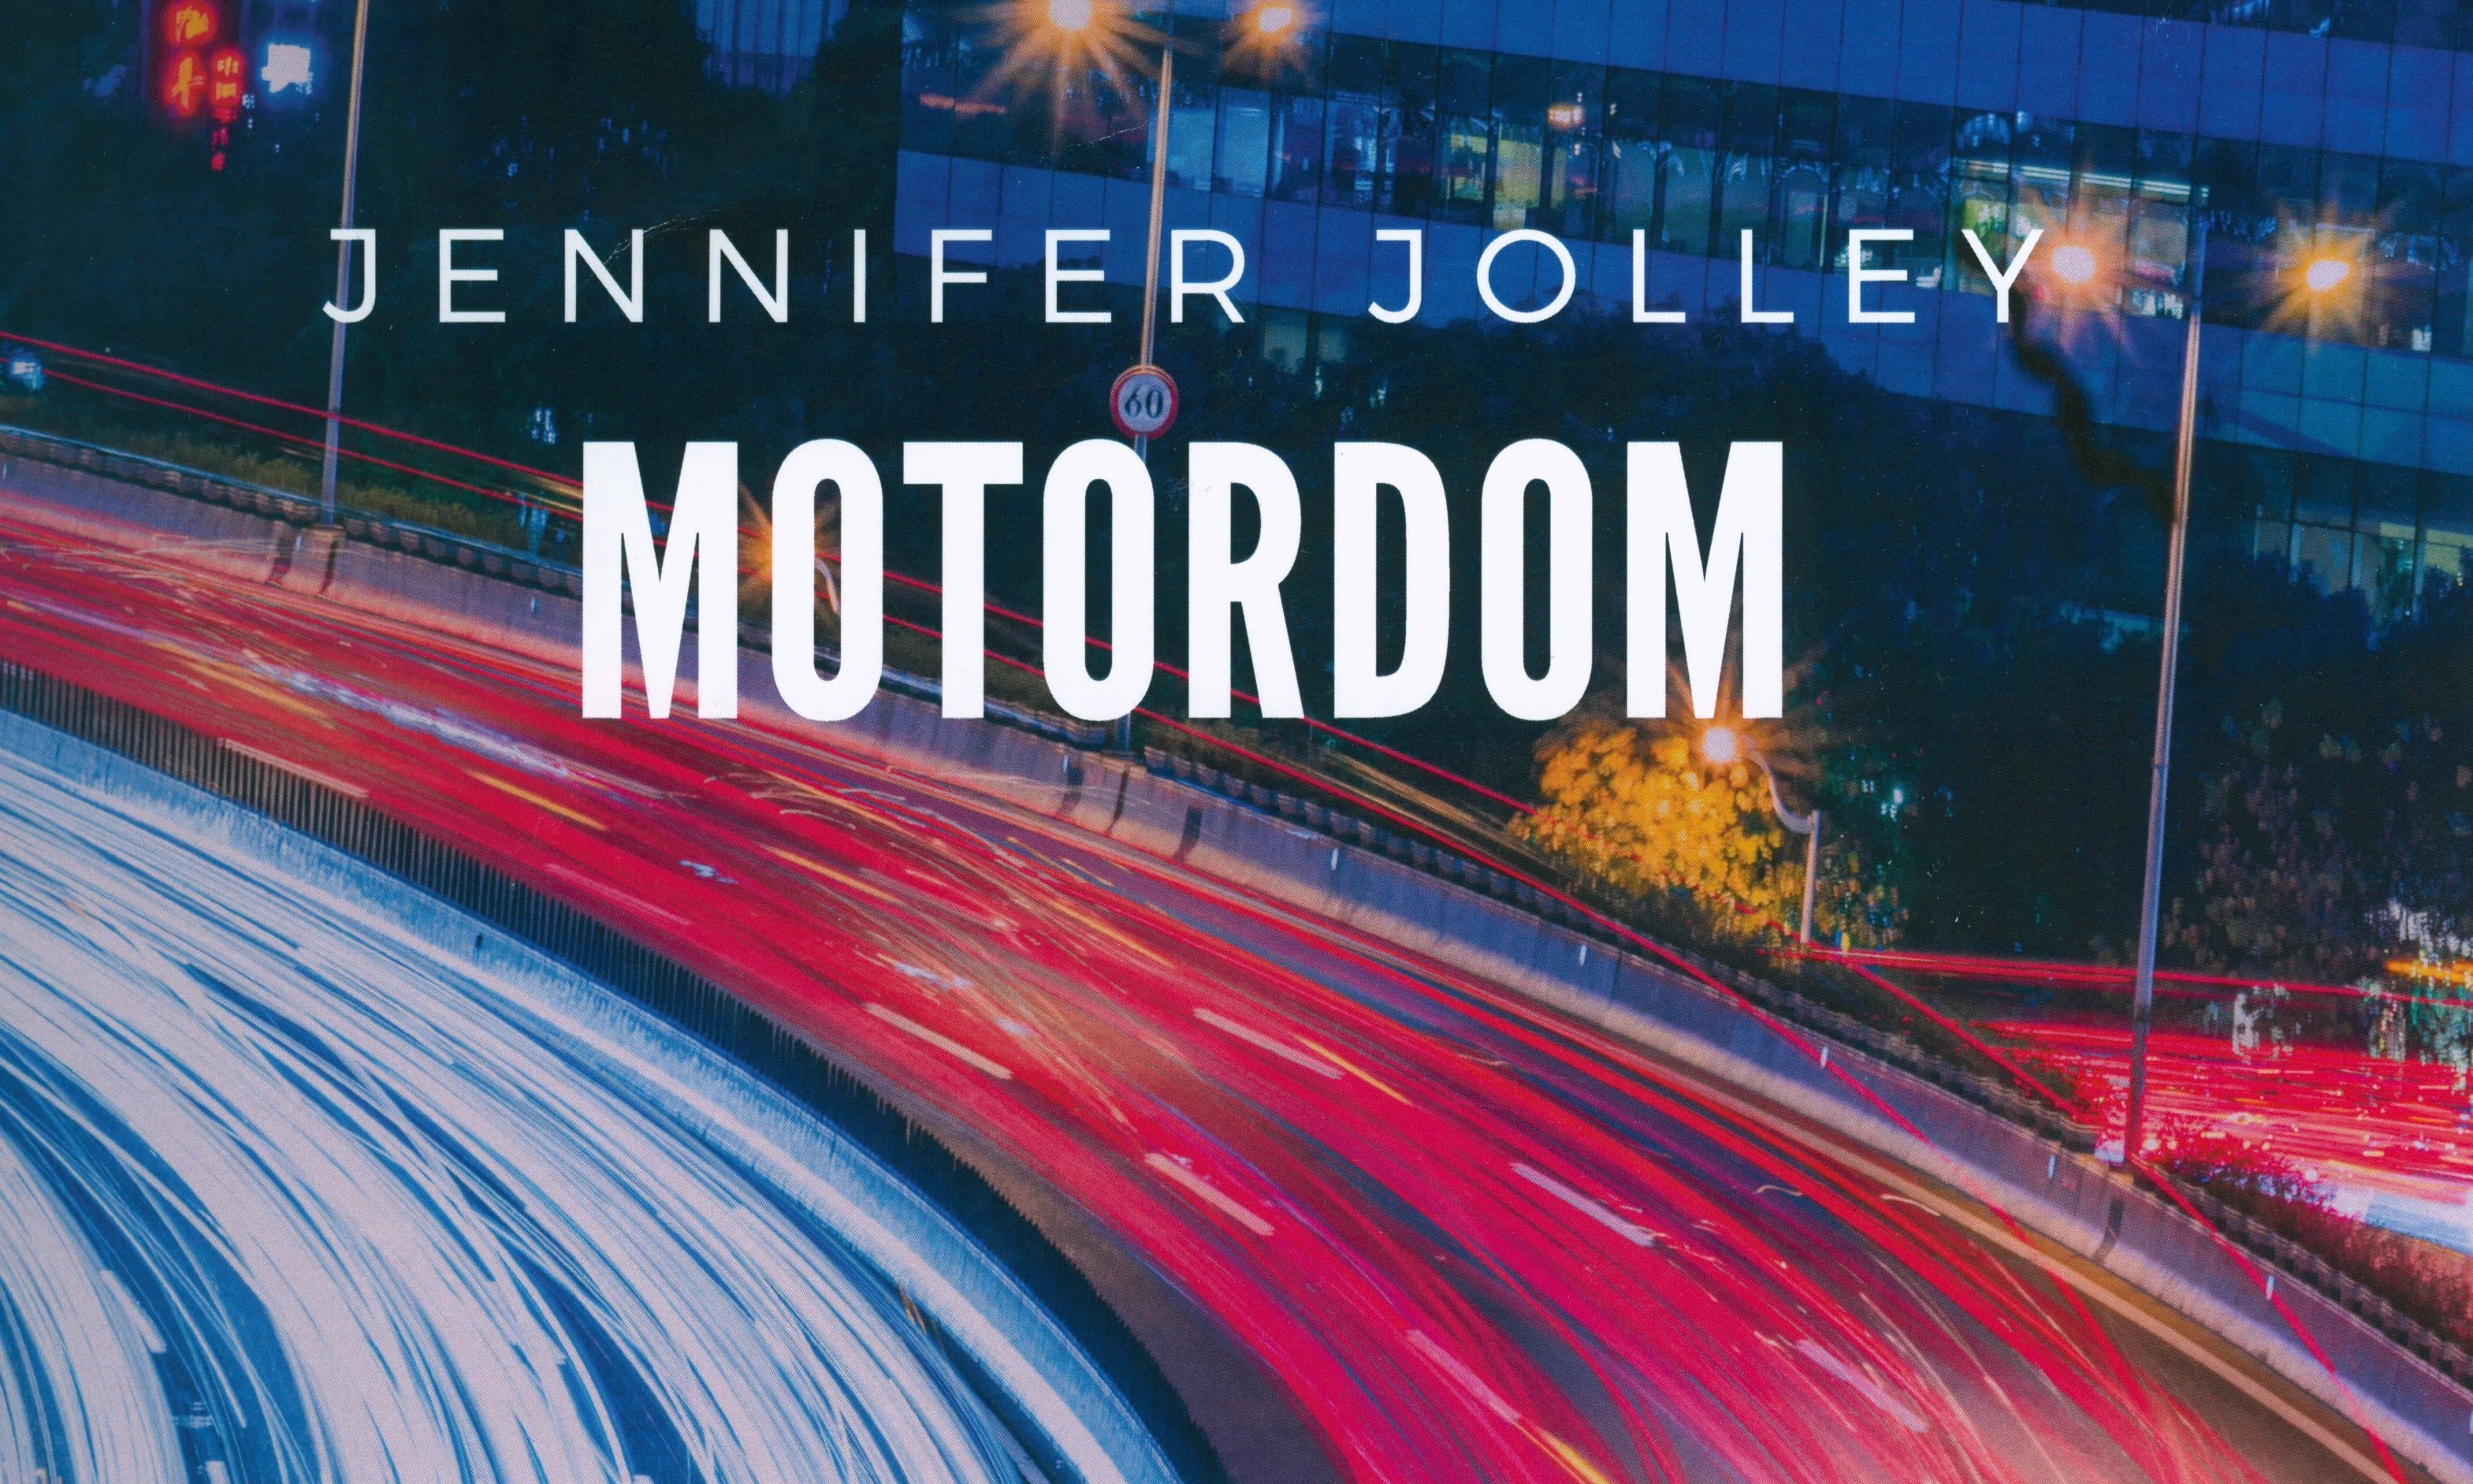 Motordom - Jennifer Jolley